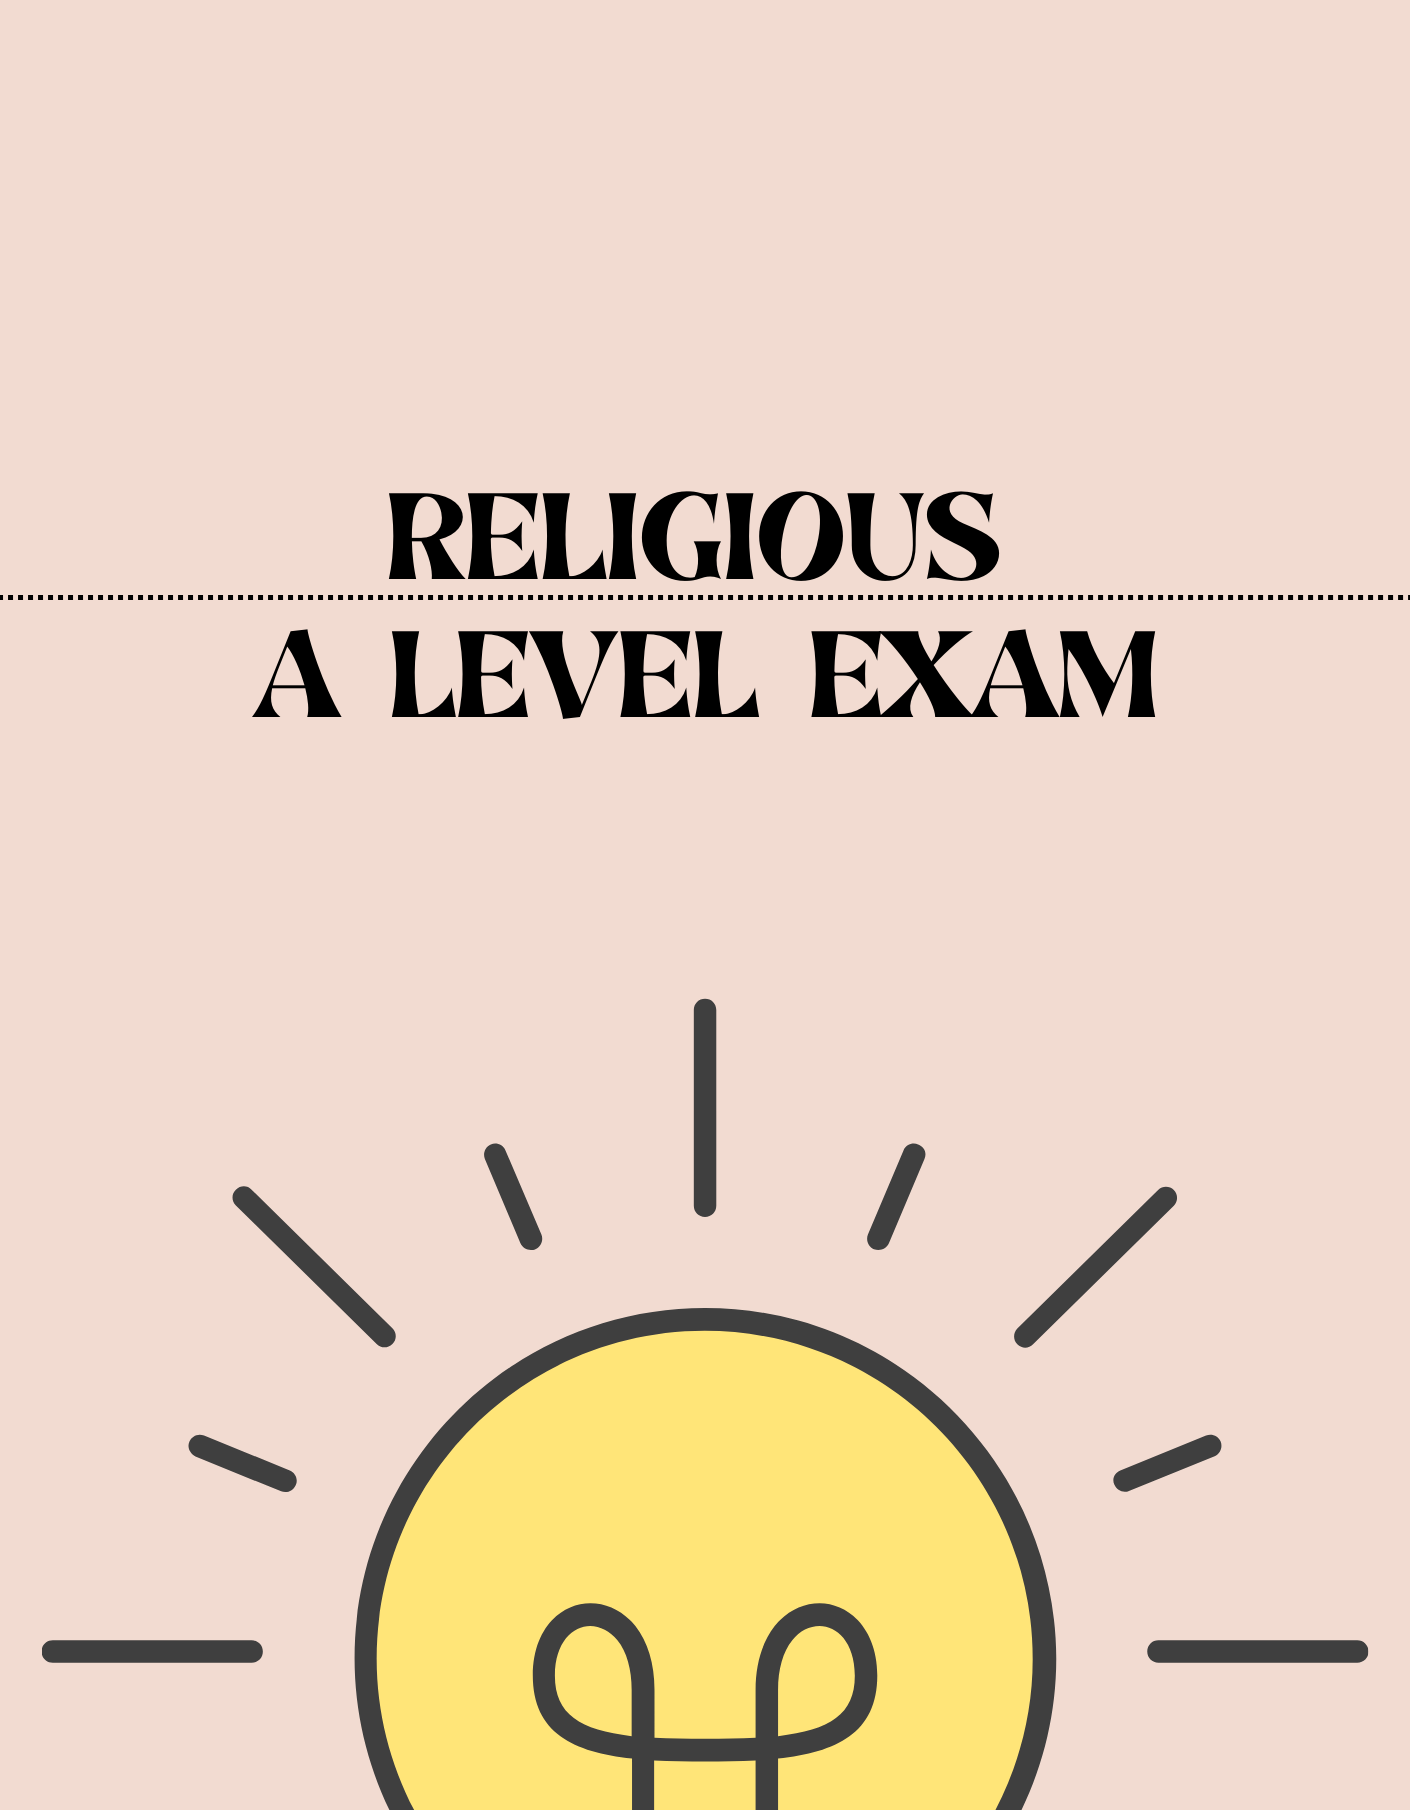 A Level - Religious Exam - Exam Centre Birmingham Limited